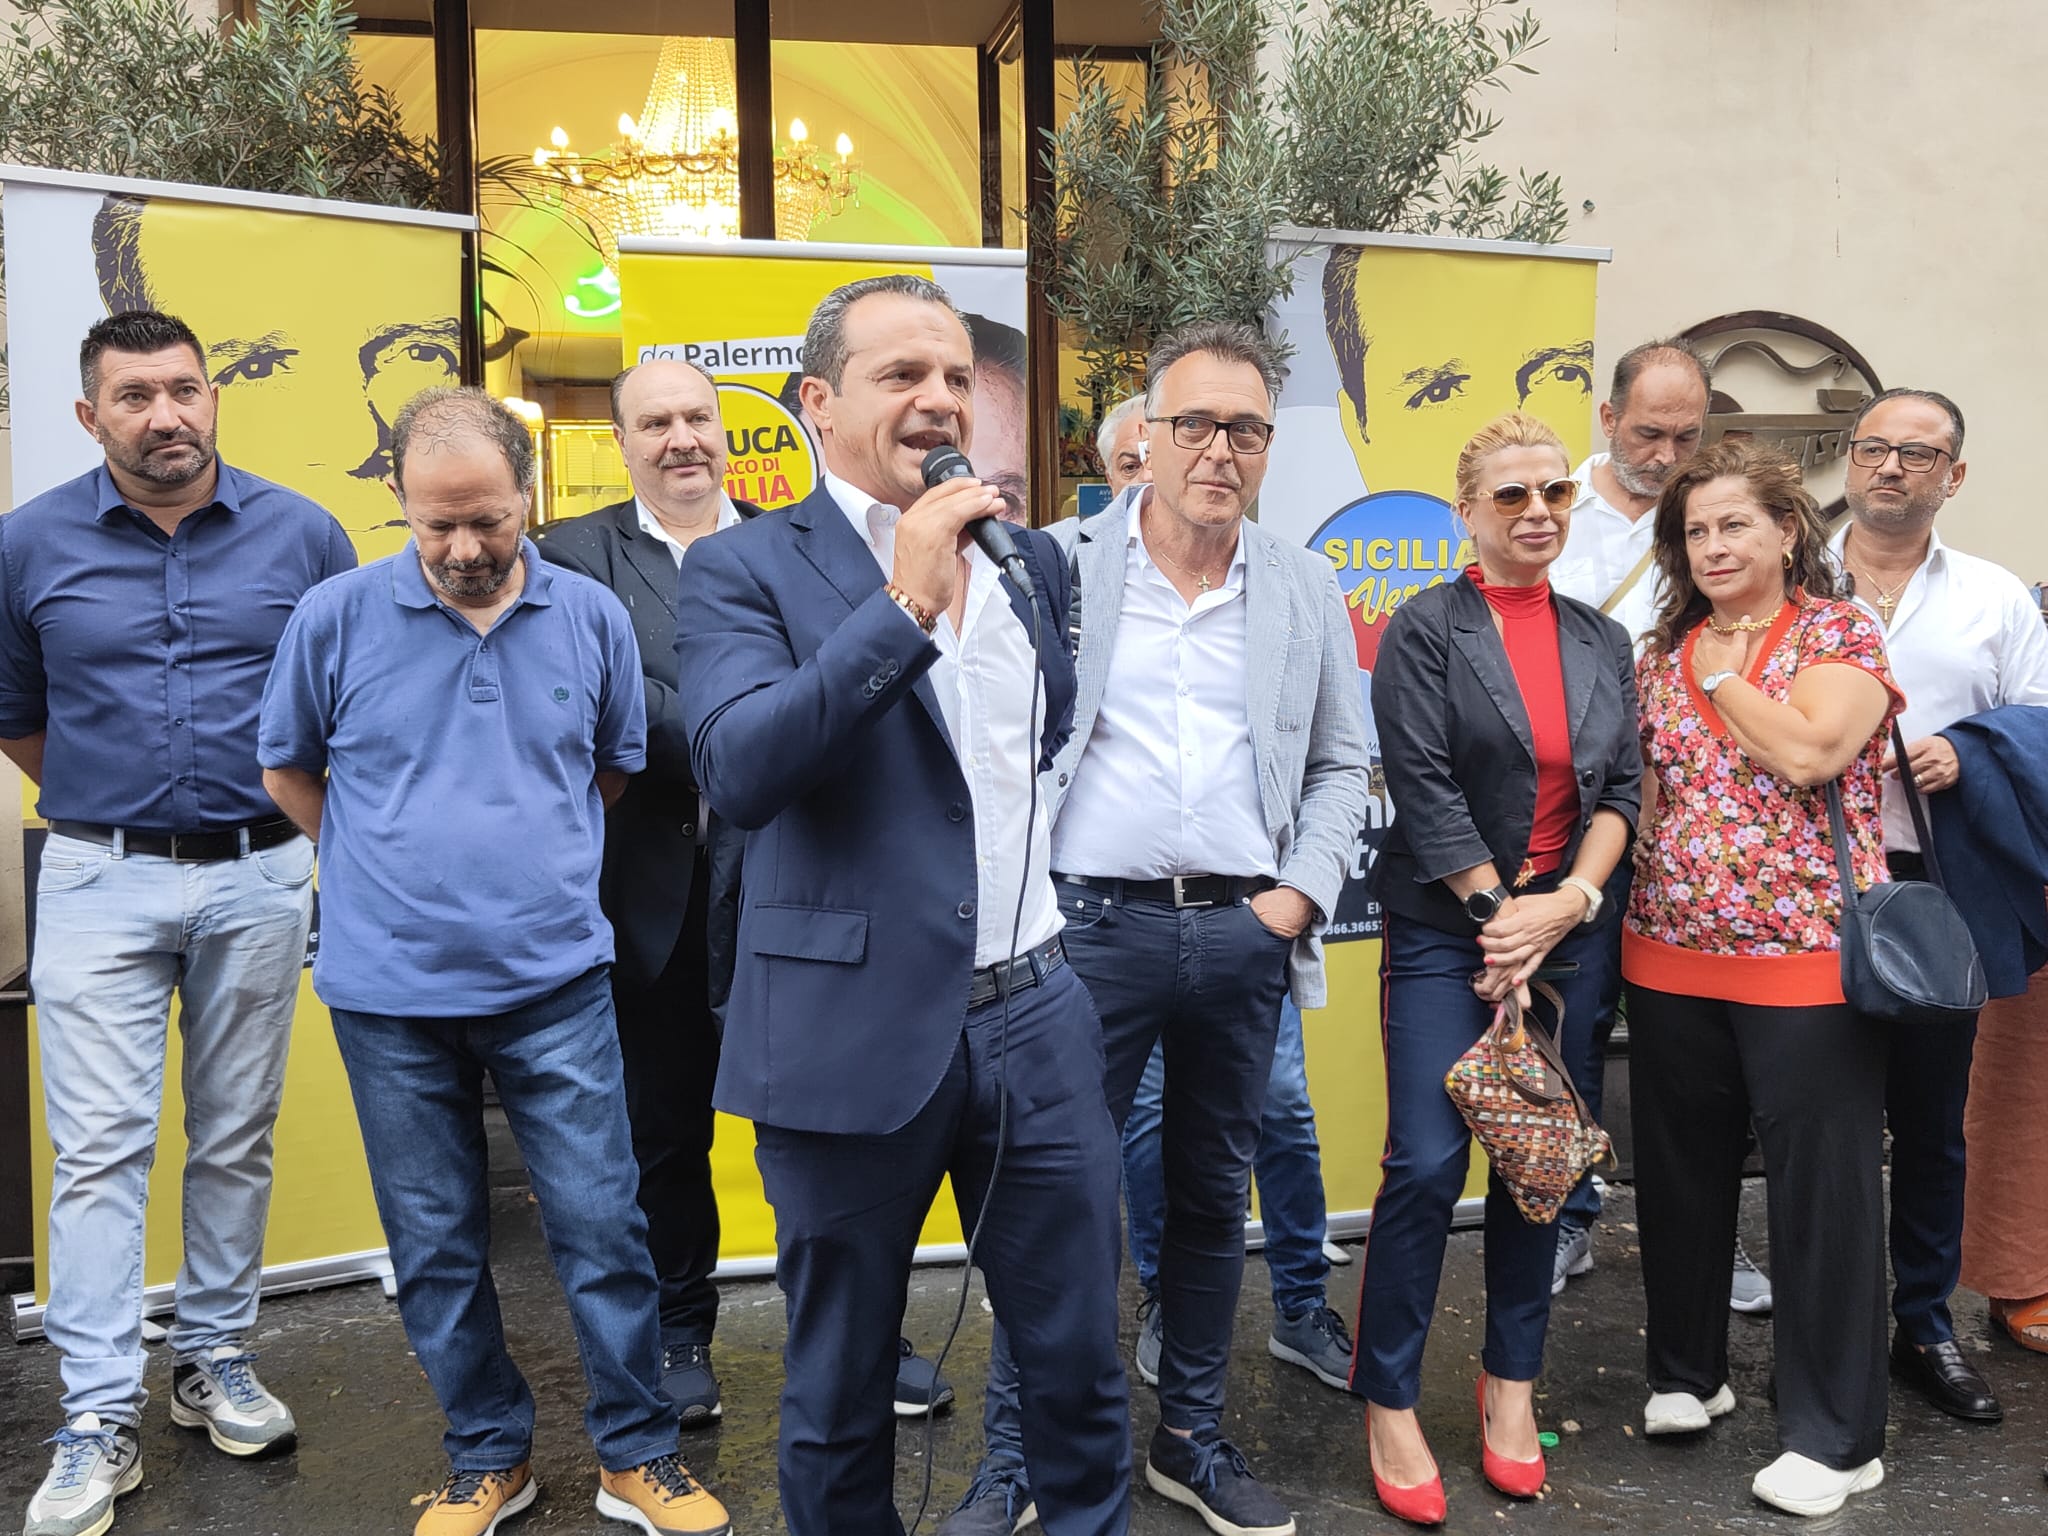 Presentati a Catania i candidati delle liste “Sicilia Vera” e “Orgoglio Siculo”.